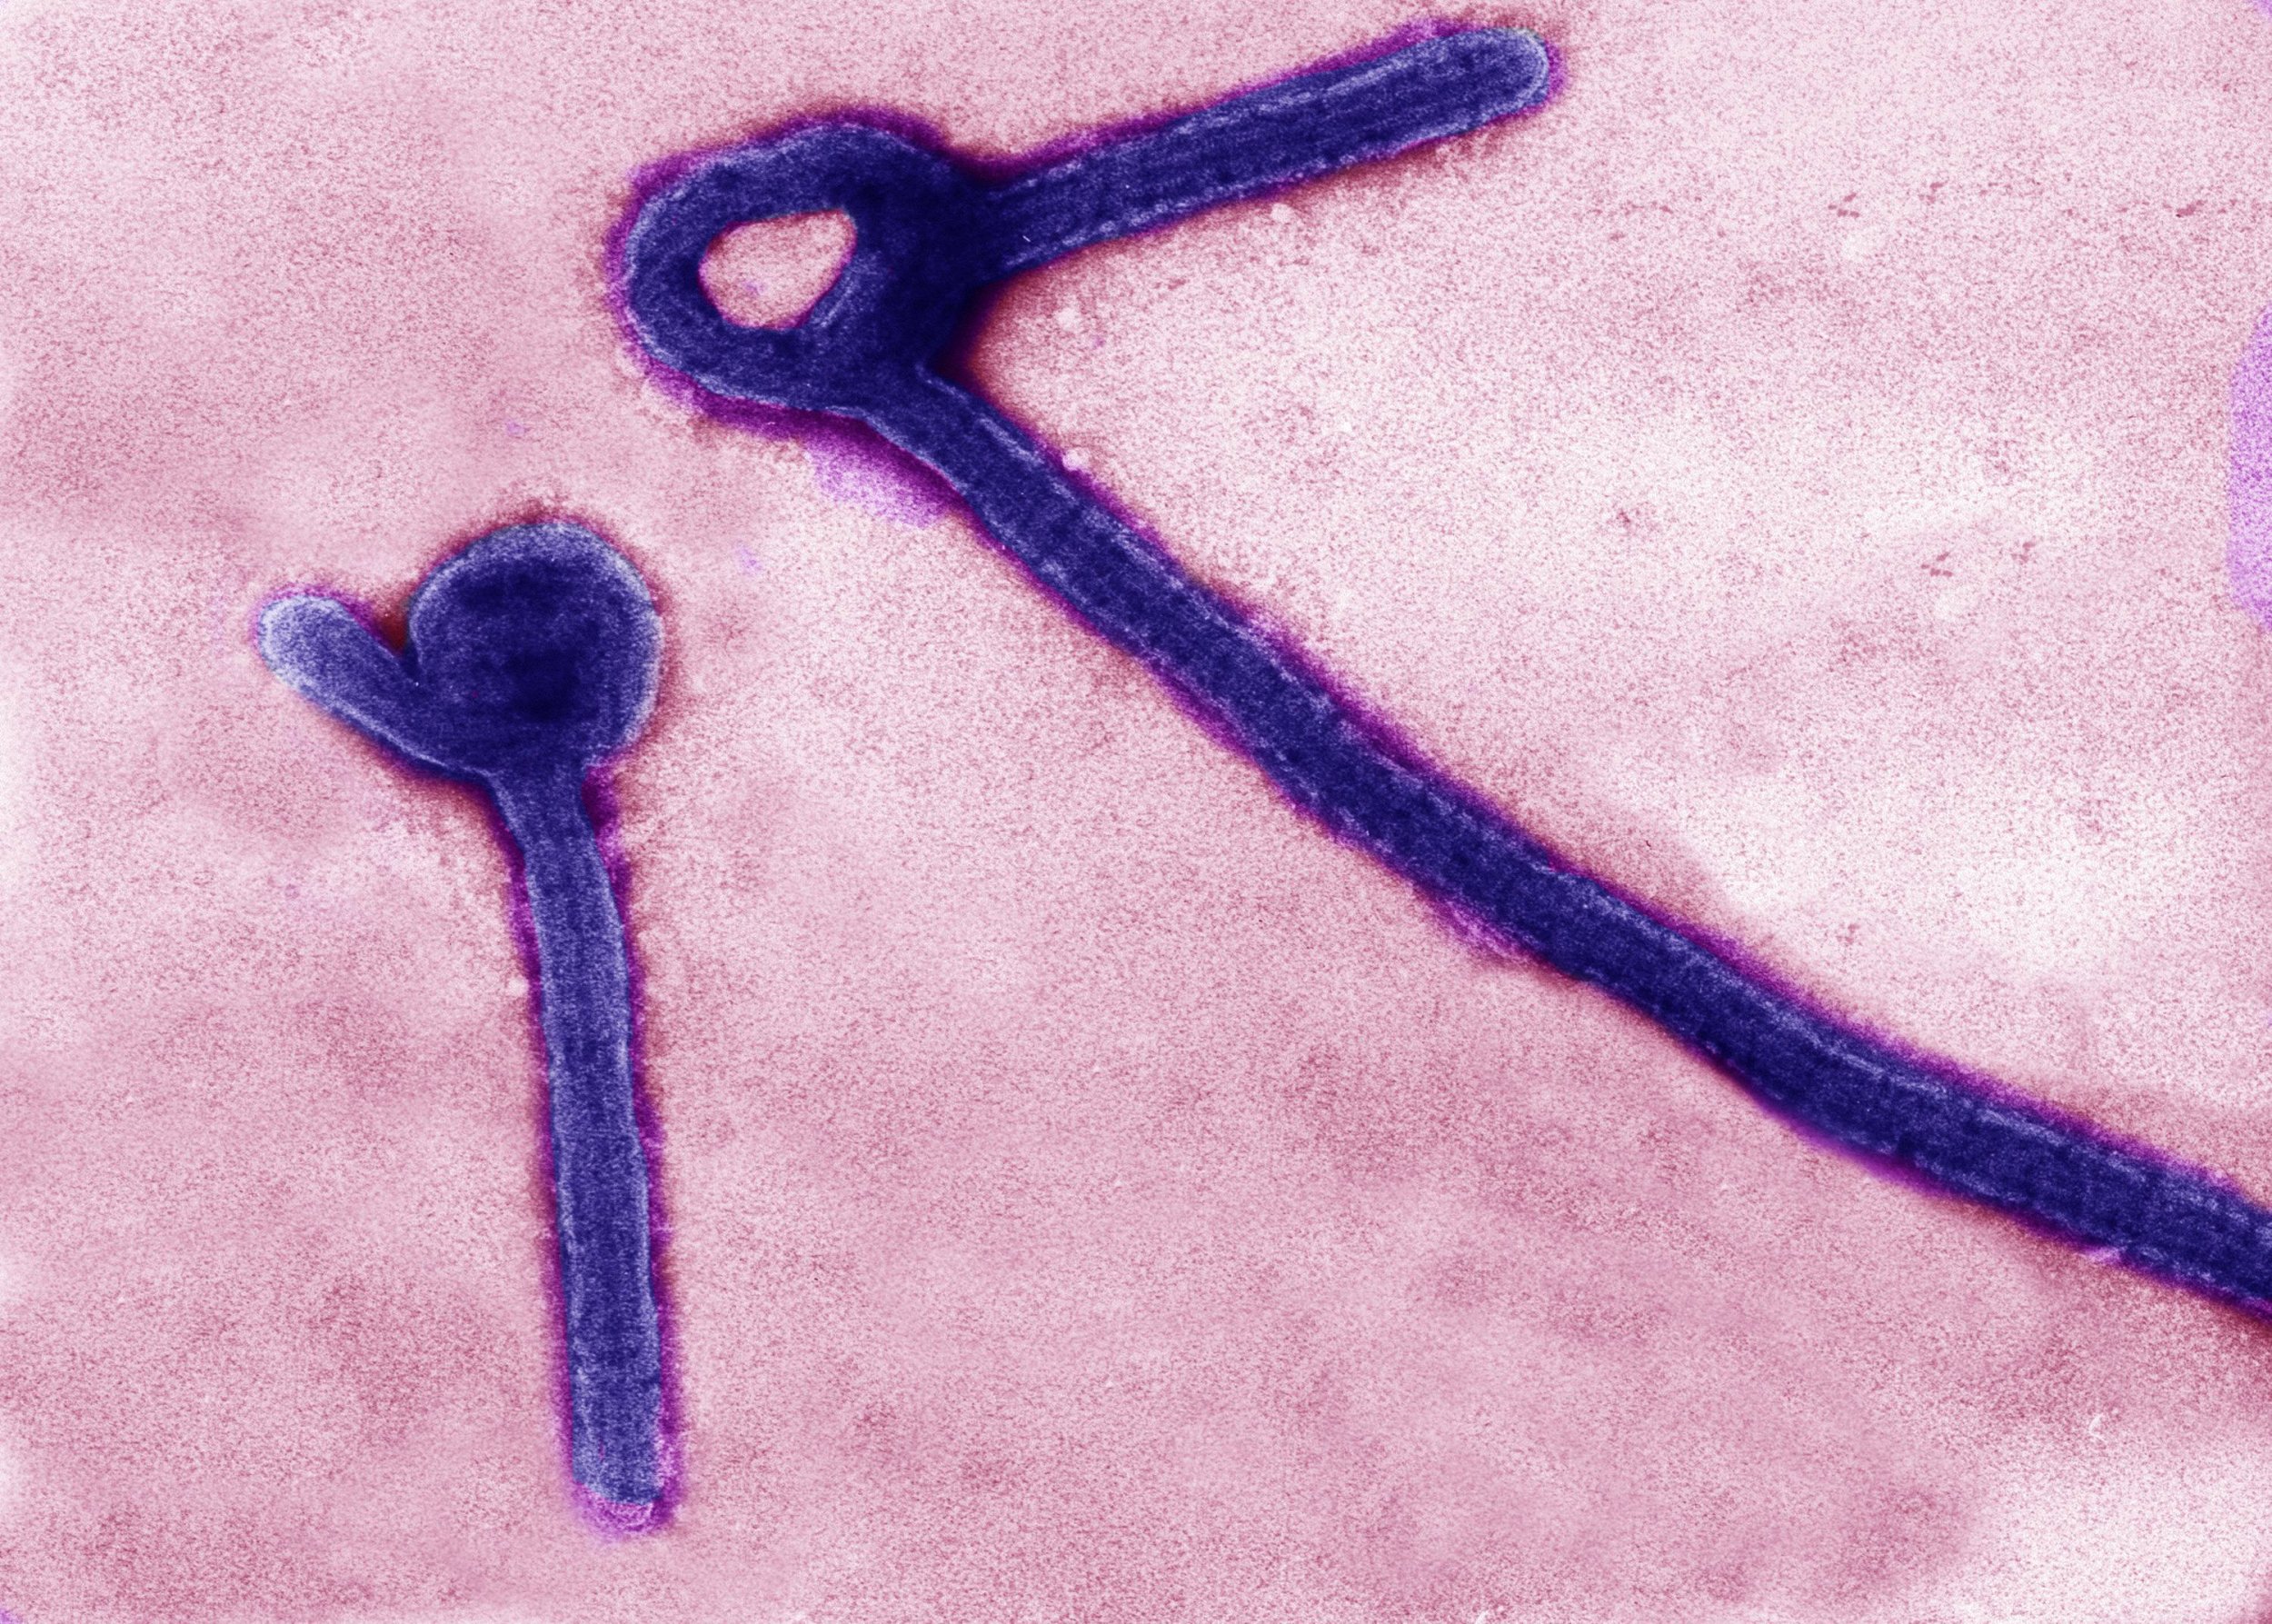 electron micrograph of Ebola virus